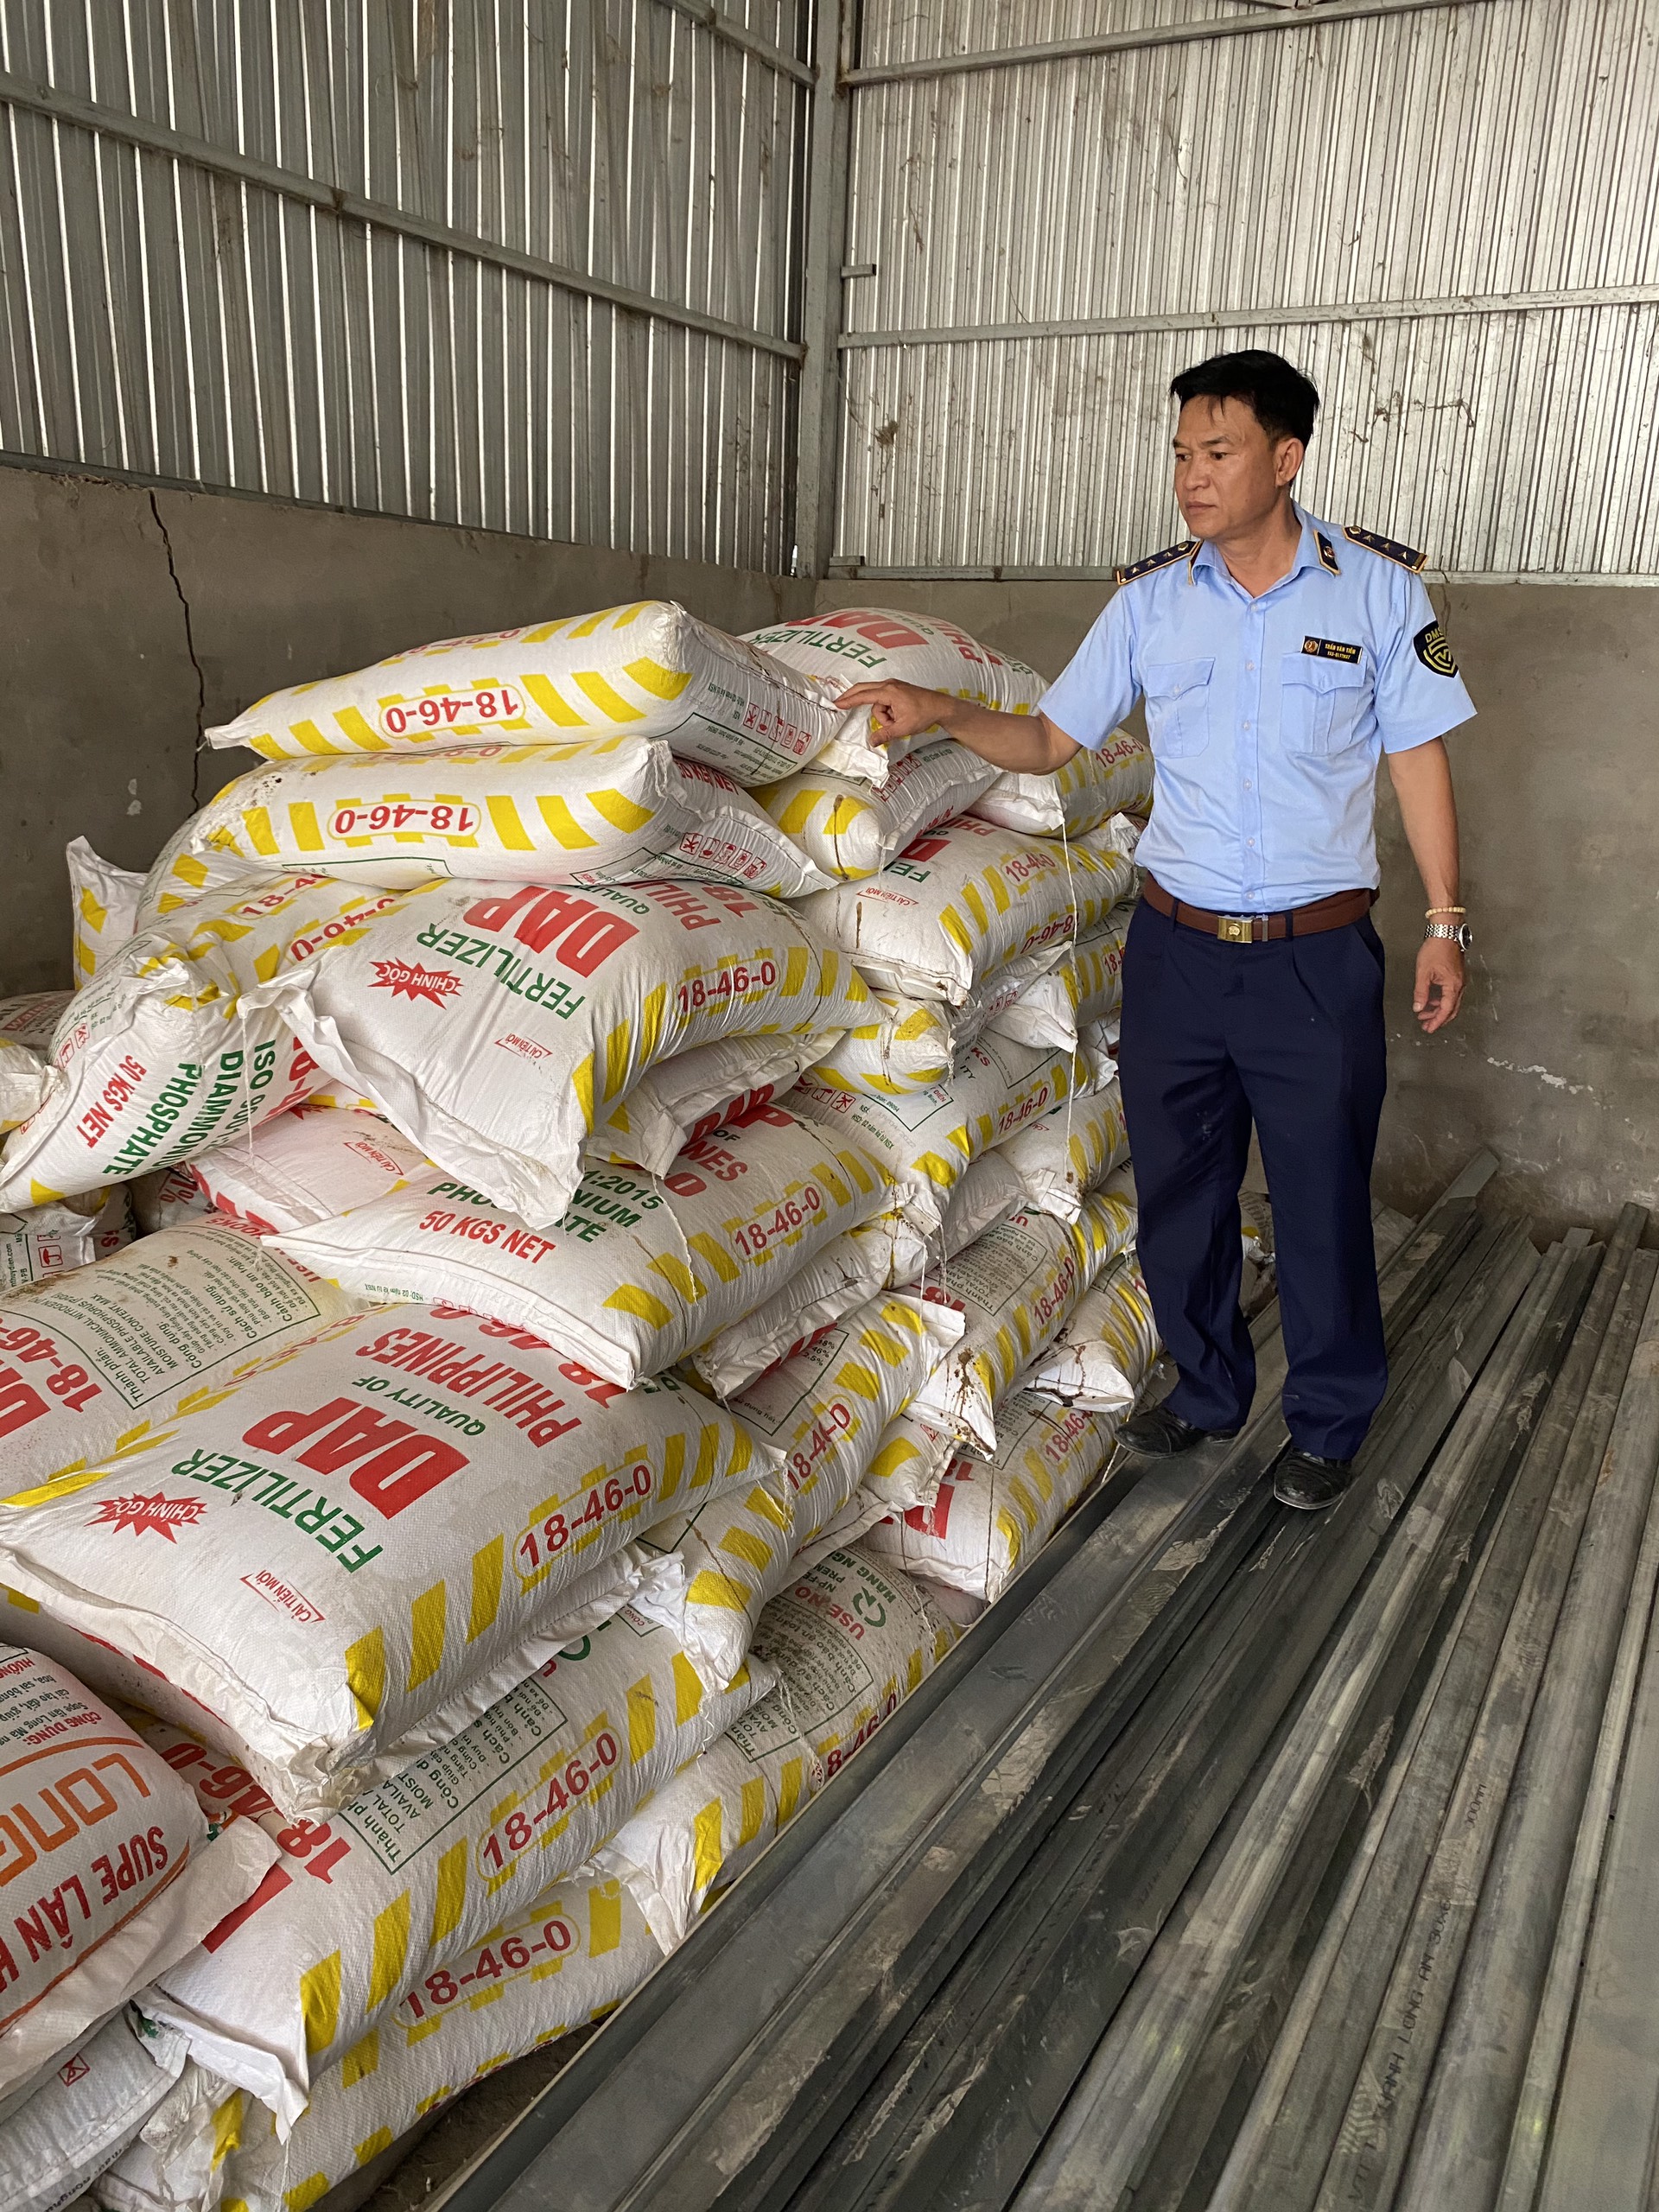 Quản lý thị trường Kiên Giang phát hiện 2,5 tấn phân bón giả